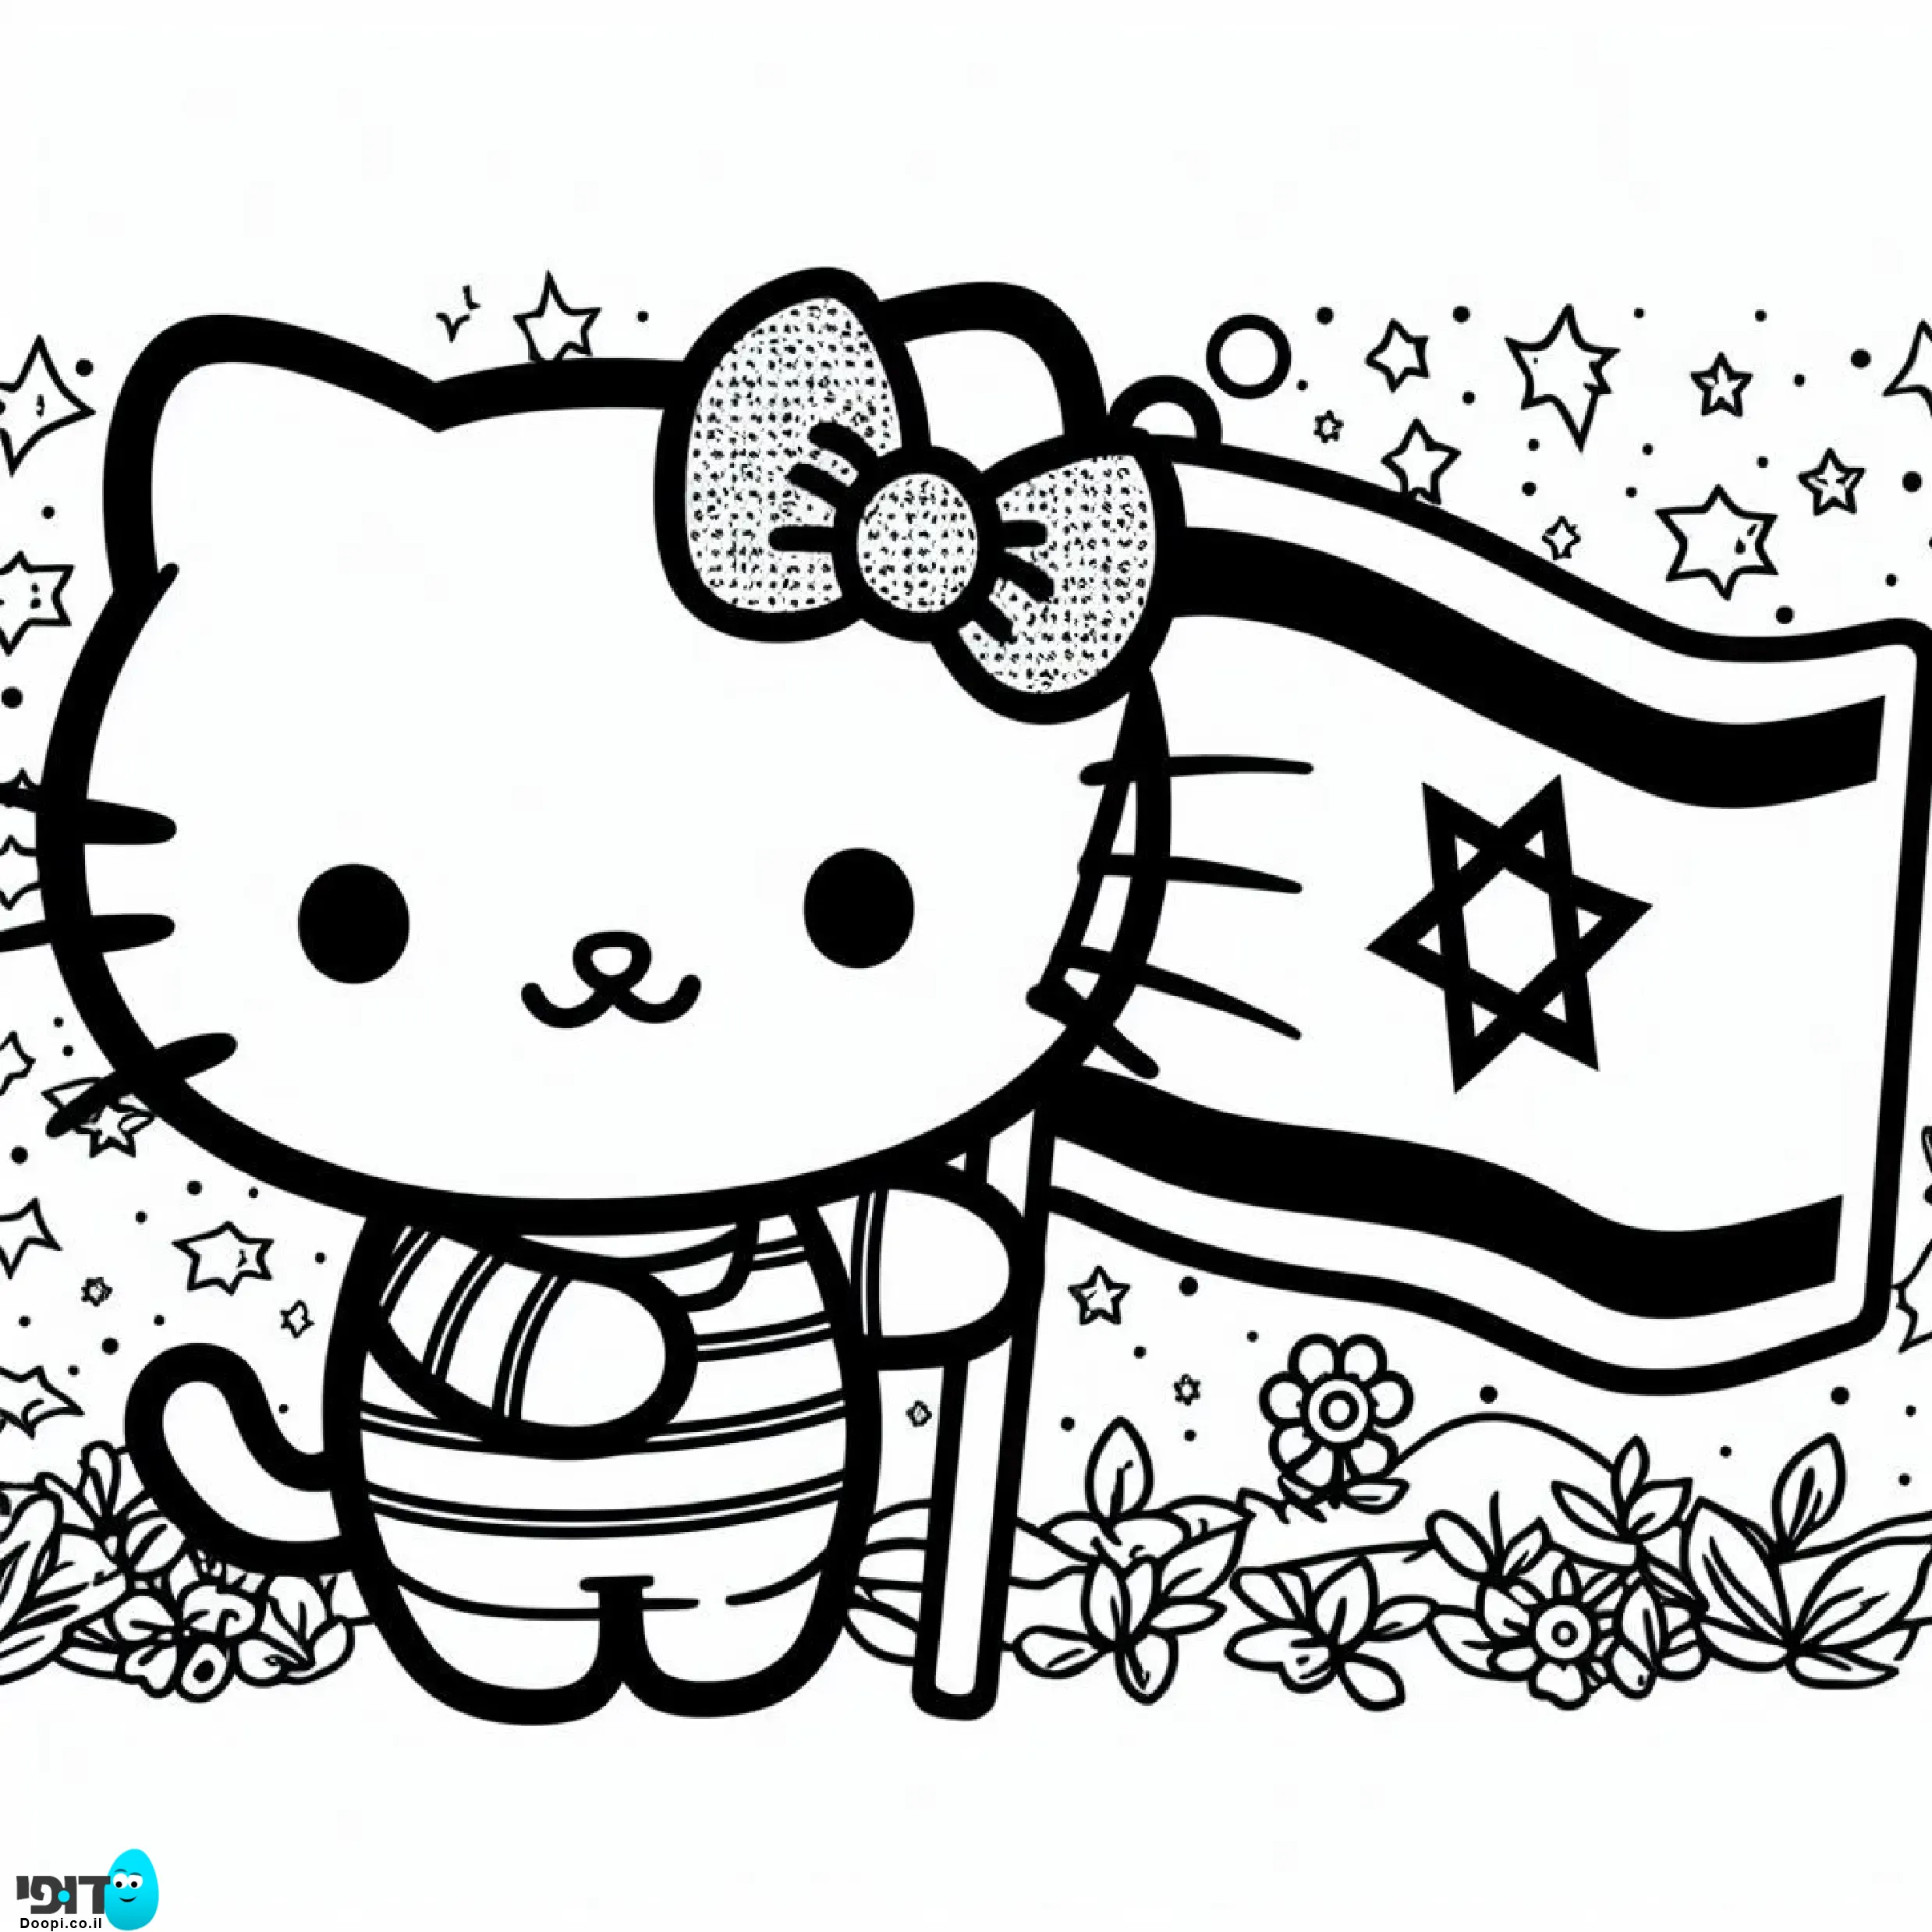 דף צביעה הלו קיטי מחיזקה בדגל ישראל